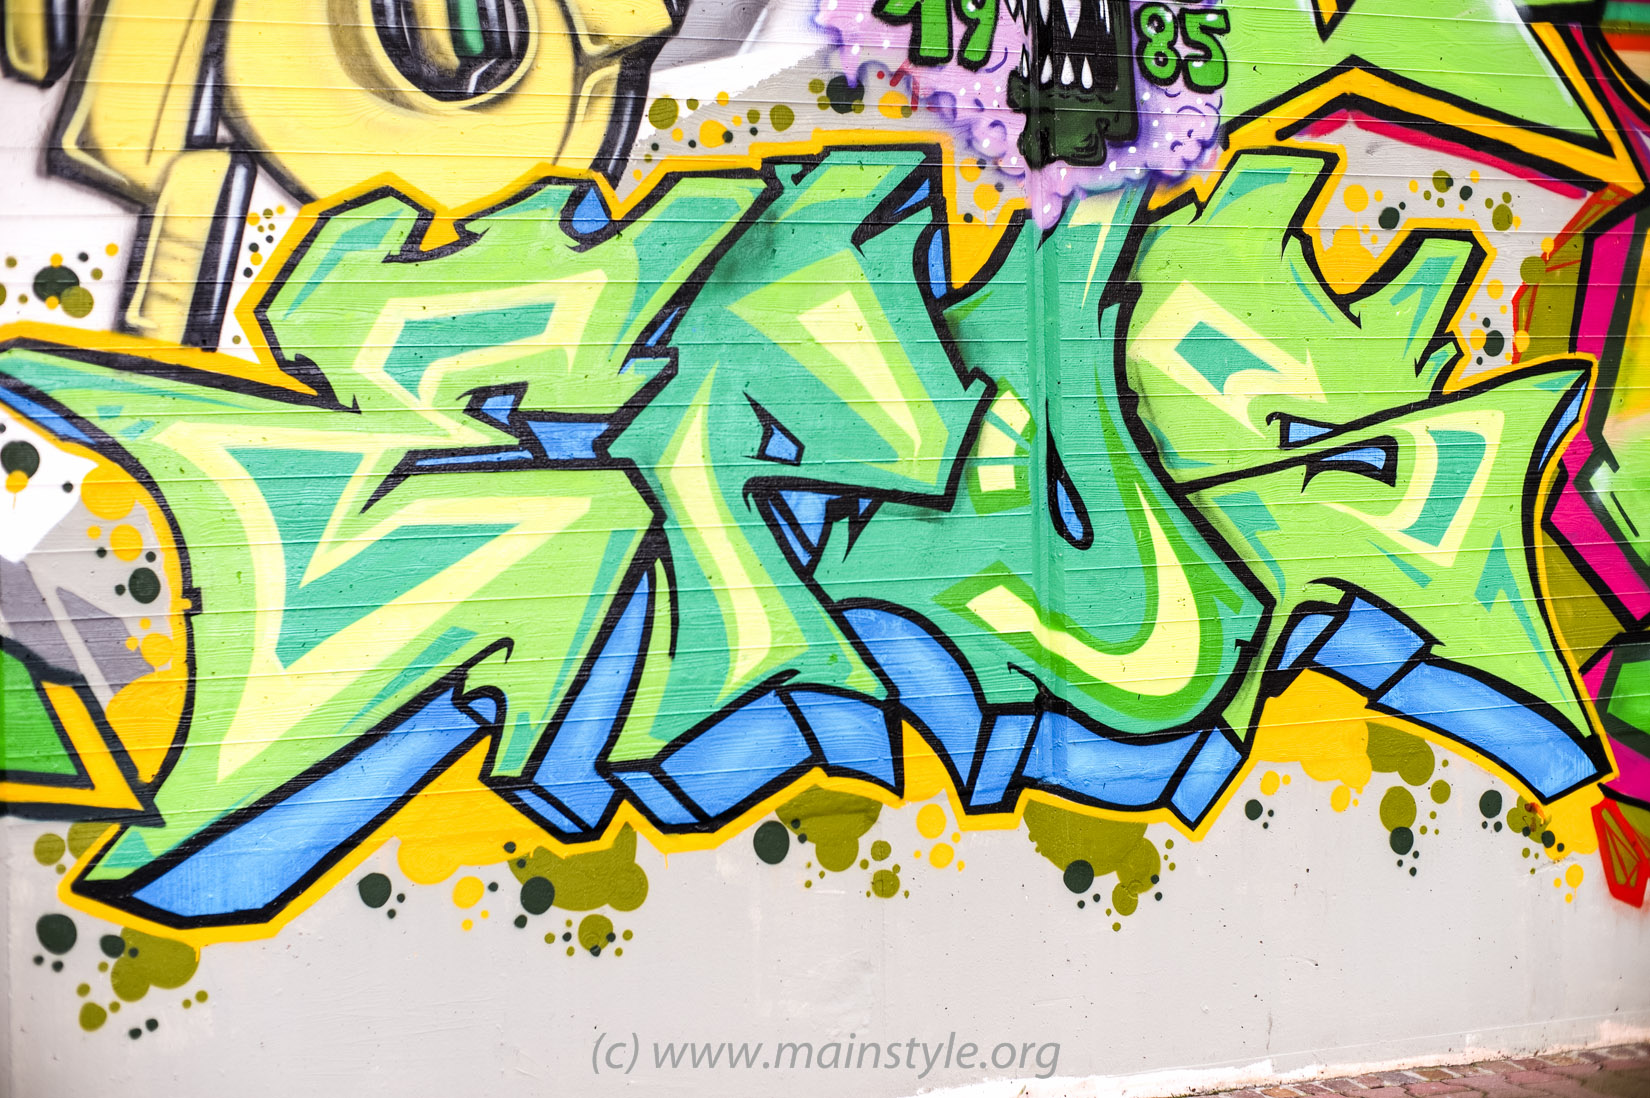 Frankfurt-Höchst_Graffiti_Süwag-Wall_2012 (21 von 35)